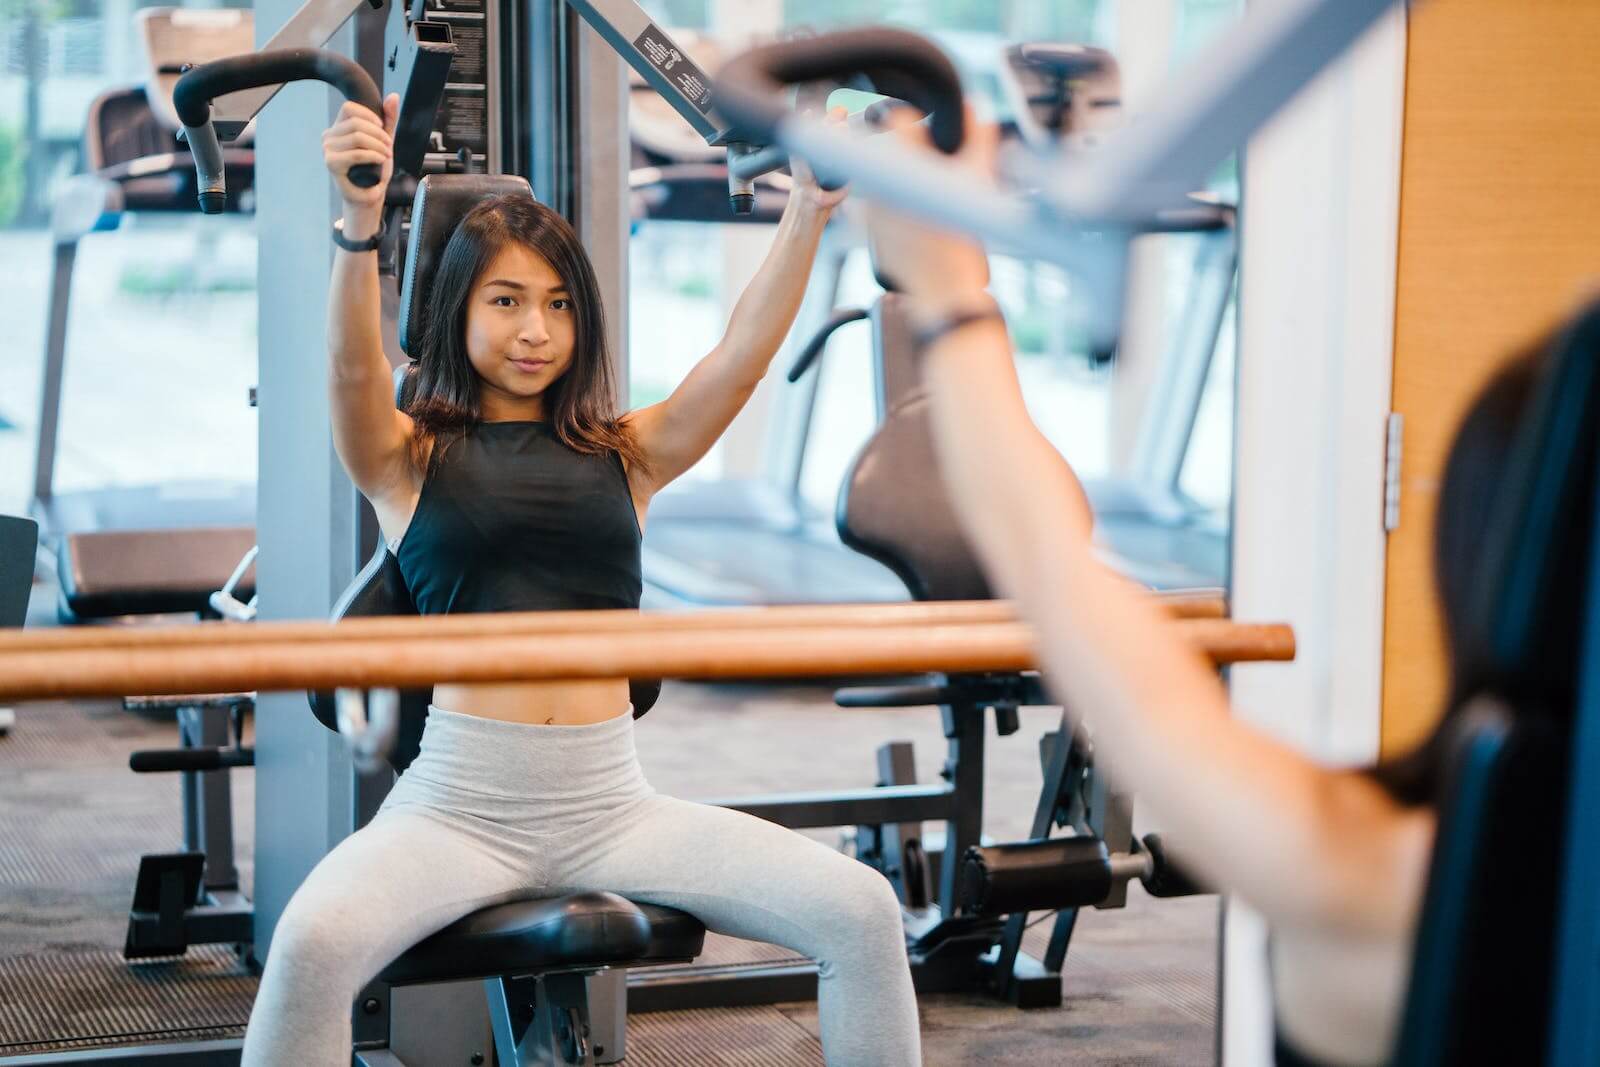 Eine Frau sitzt im Fitnessstudio, macht Armübungen und betrachtet sich im Spiegel